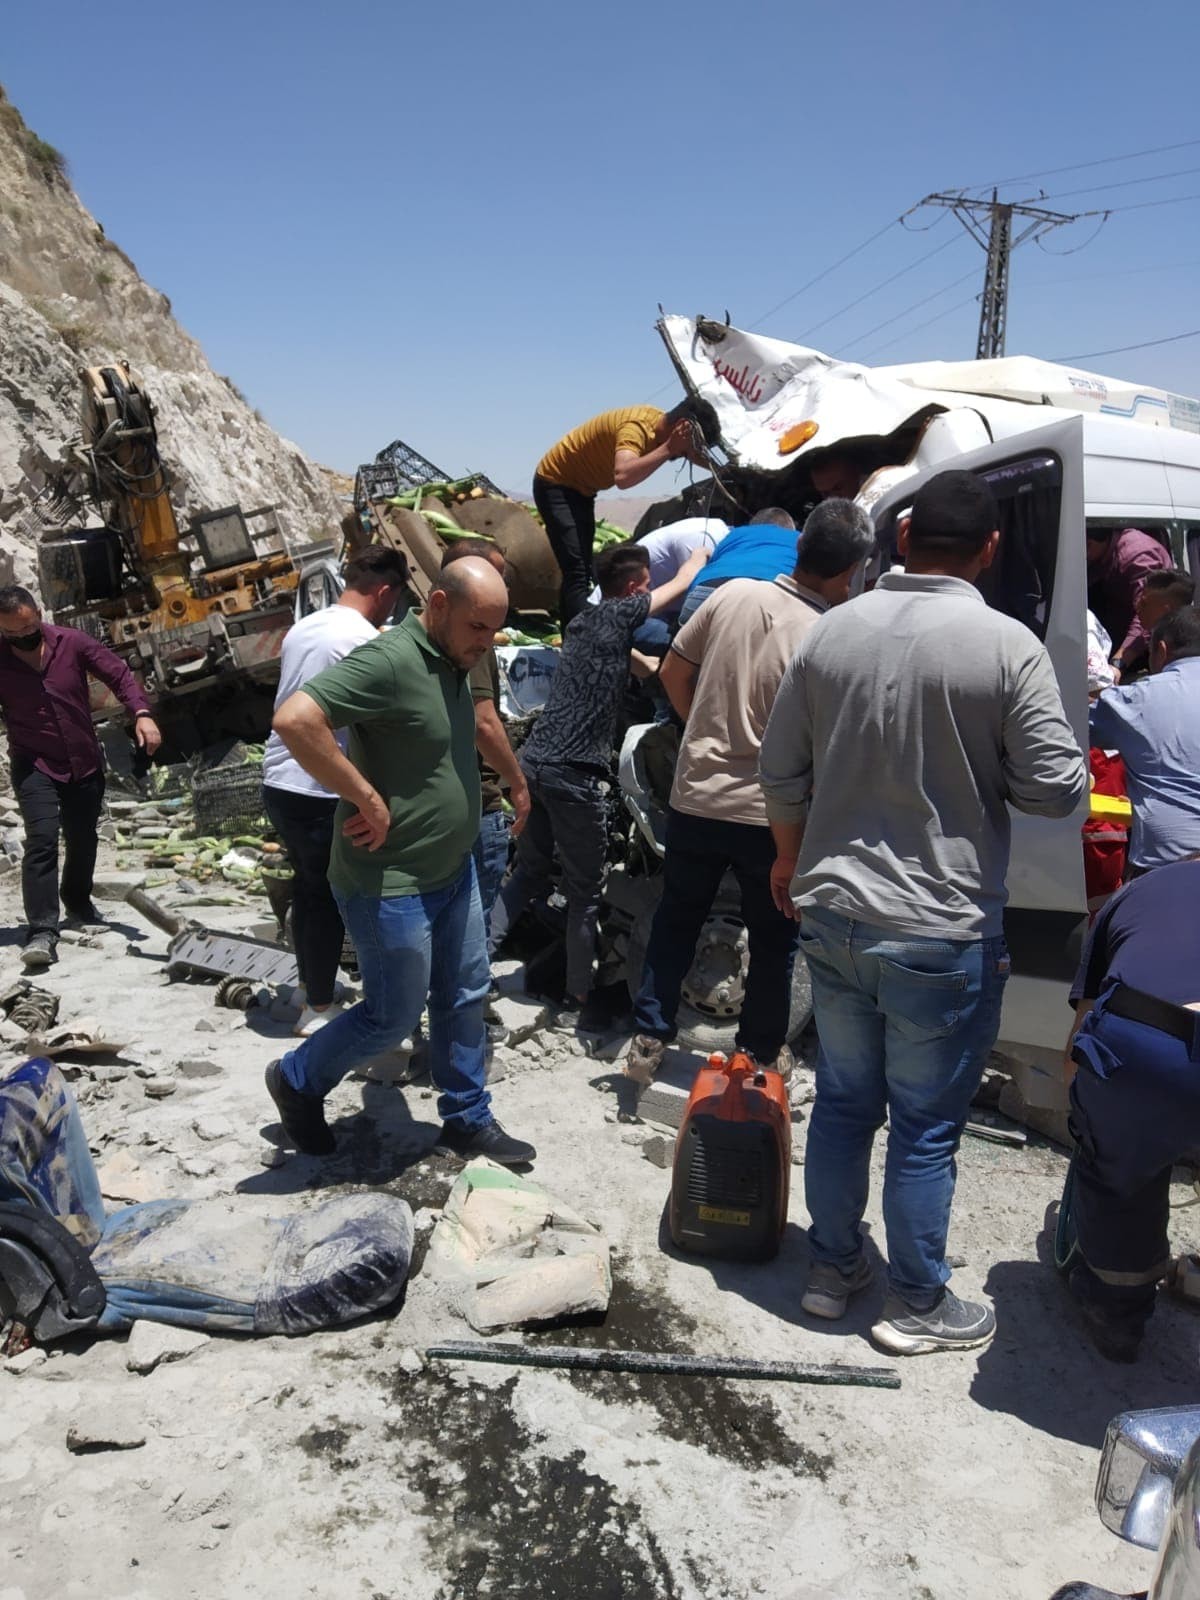 مصرع مواطنَين وإصابة 5 آخرين في حادث سير شمال نابلس